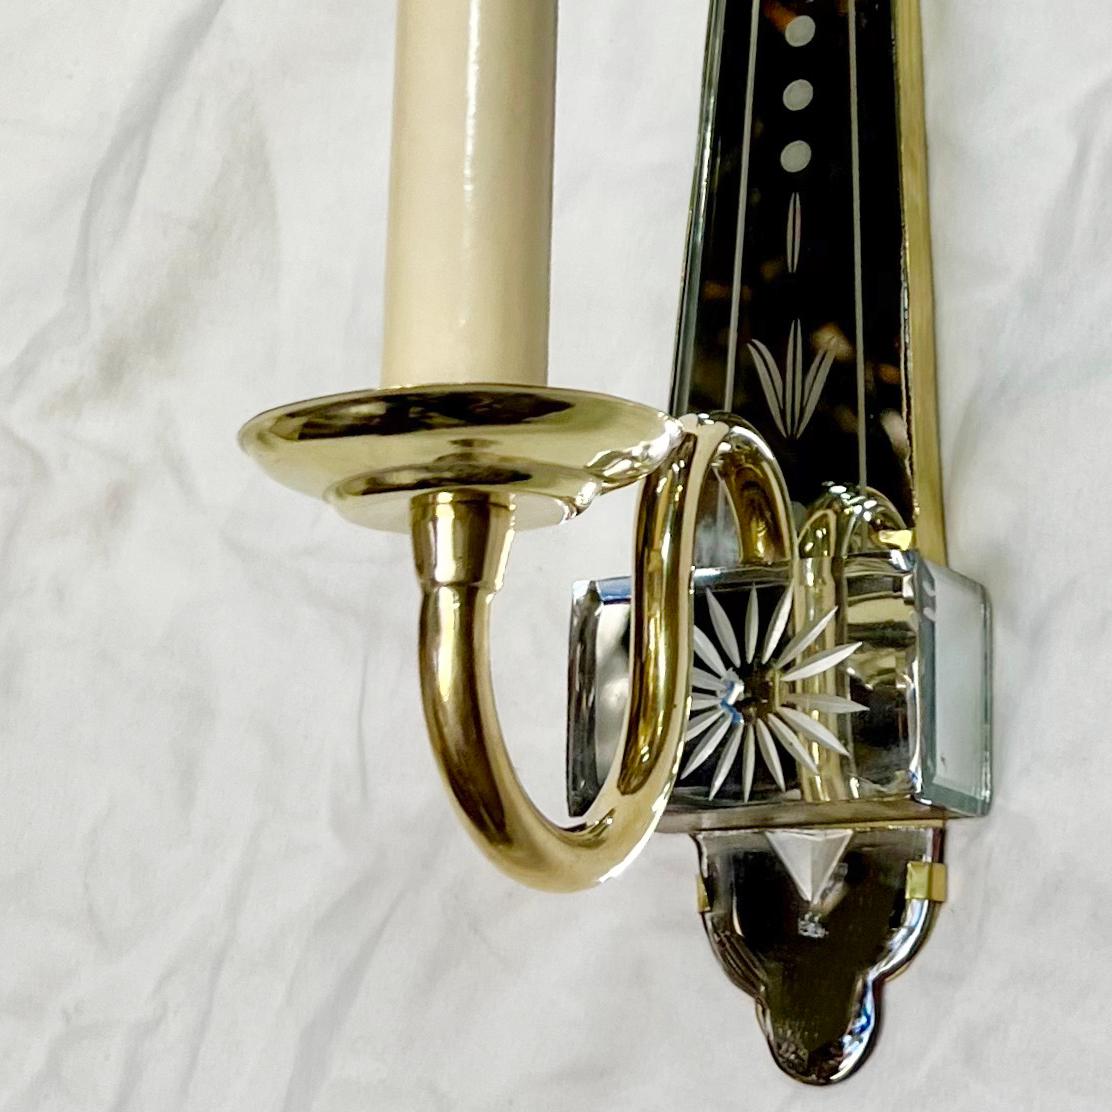 Paire d'appliques françaises en bronze doré à un bras, datant des années 1950, avec dos en miroir gravé.

Mesures :
Hauteur : 11